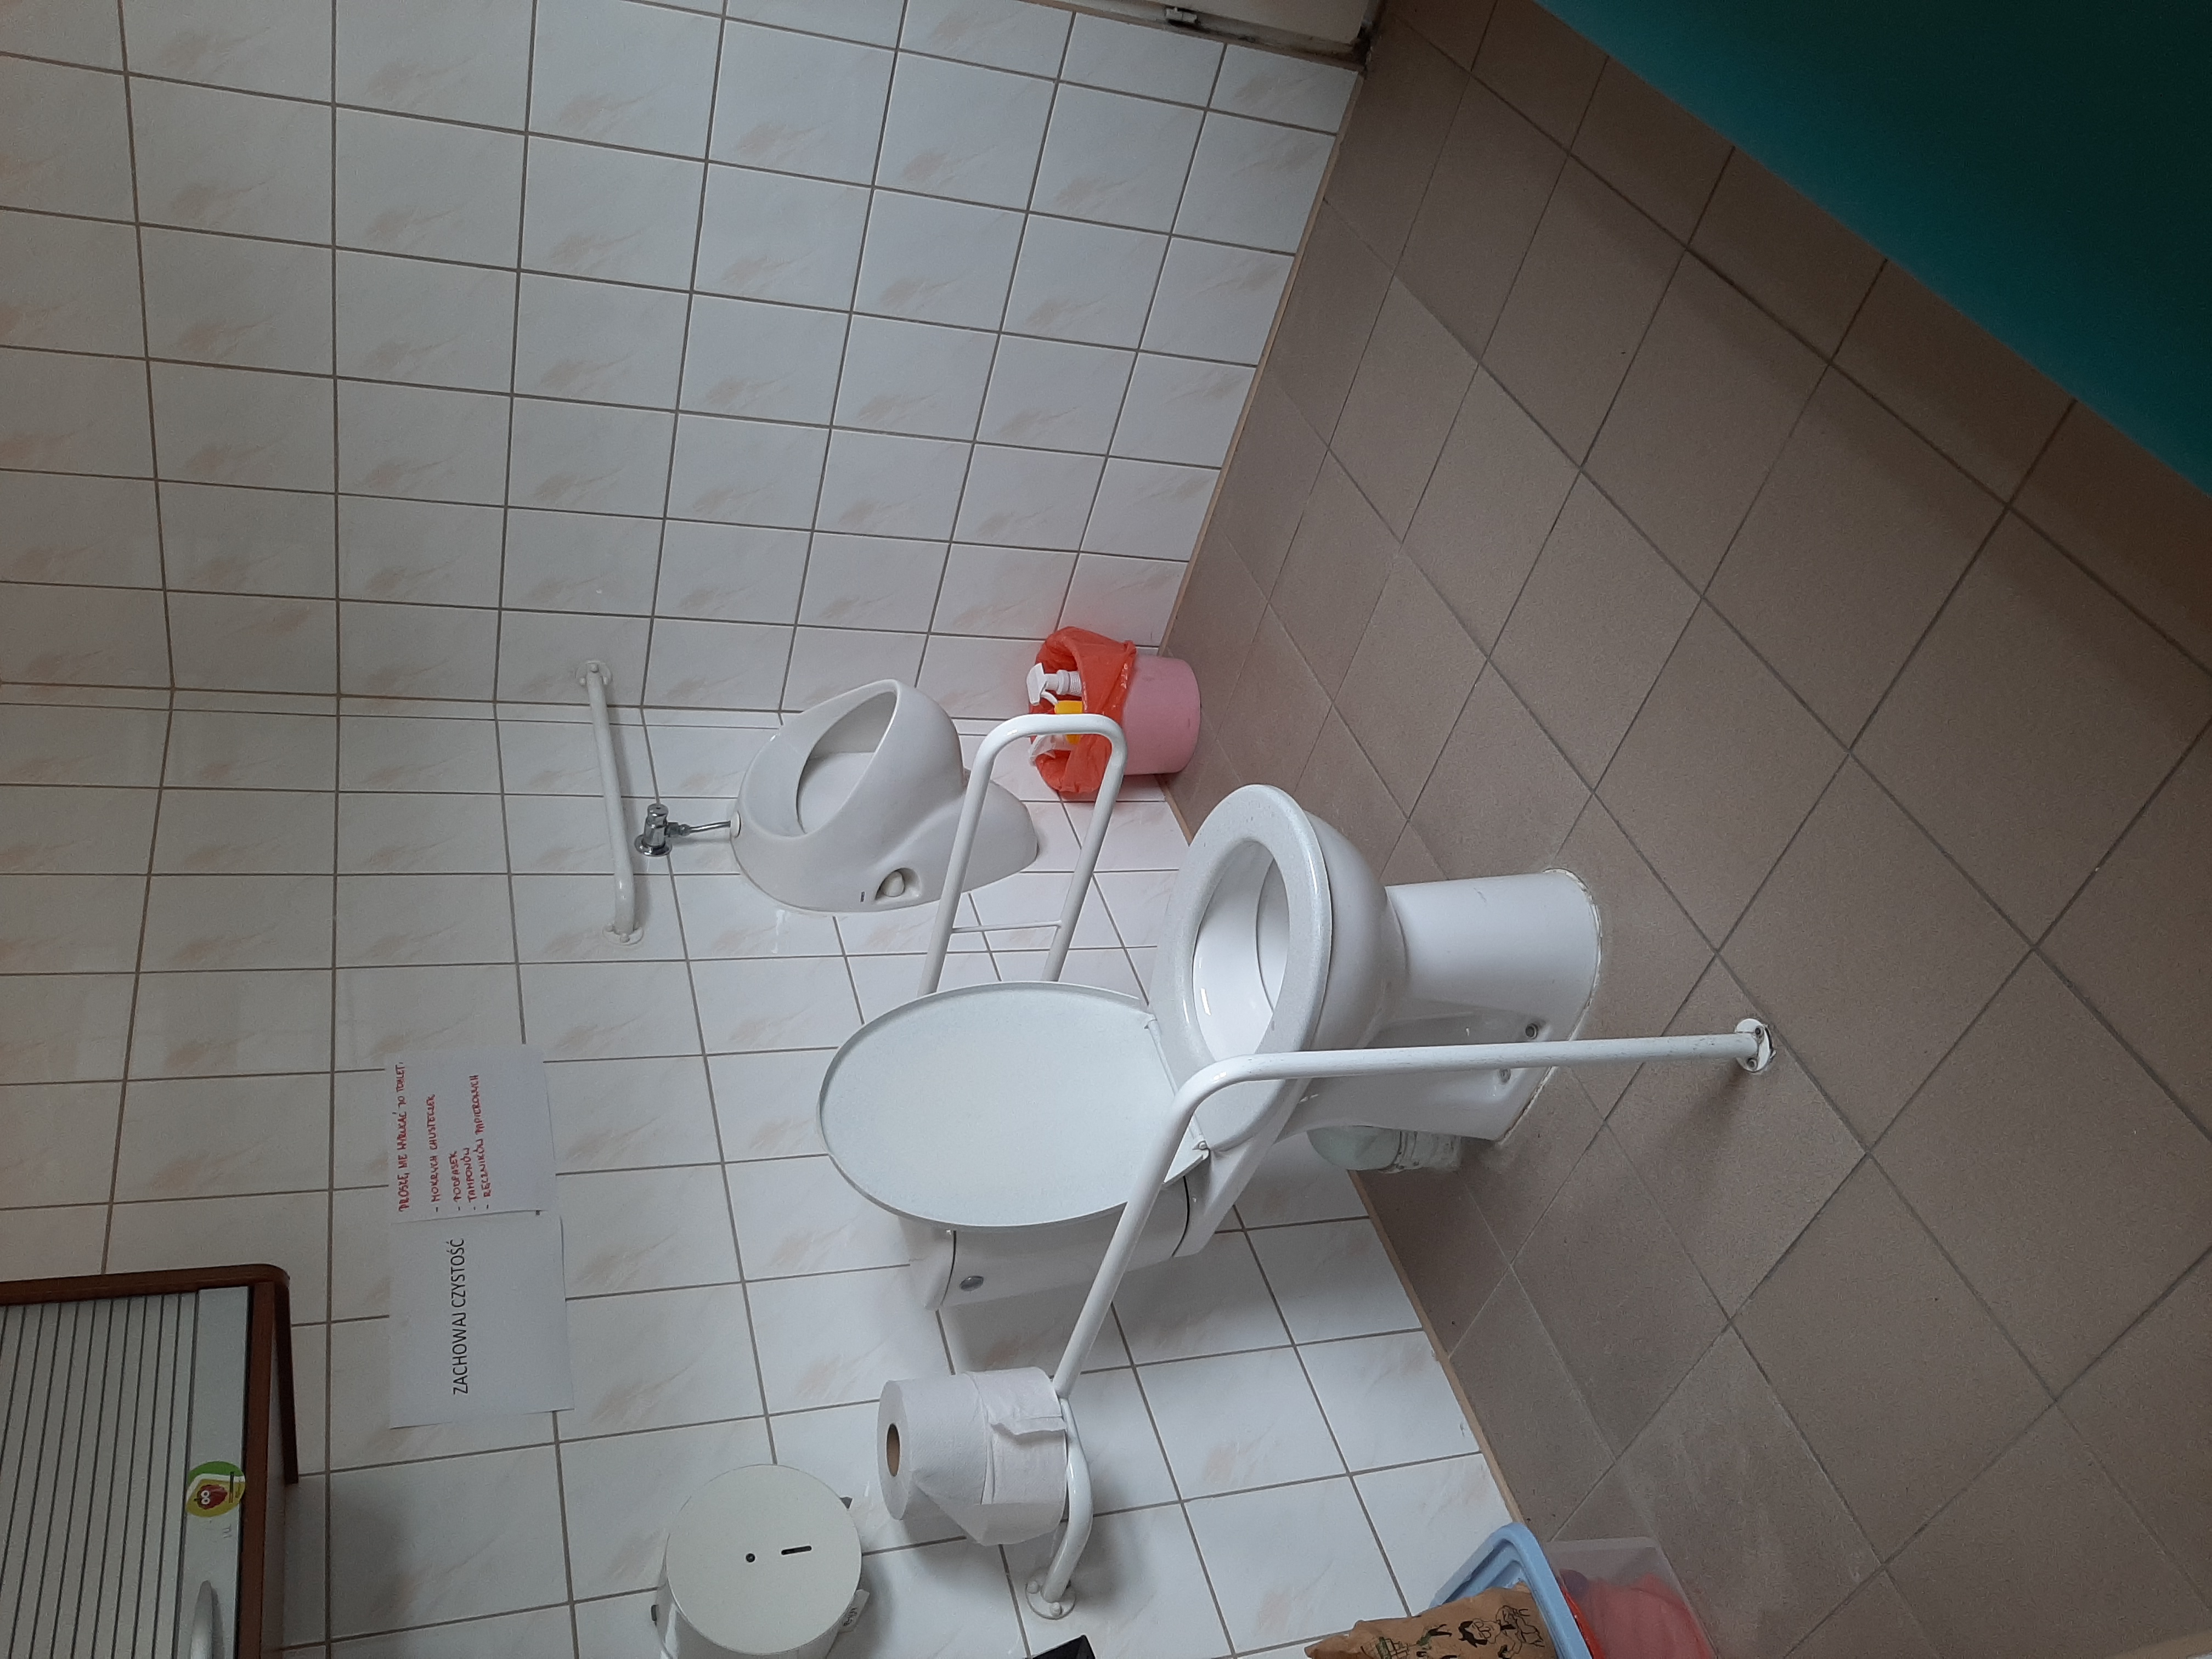 Zdjęcie przedstawia toaletę dla osób z niepełnosprawnością. Sedes z obu stron wyposażono w niezbędne poręcze.